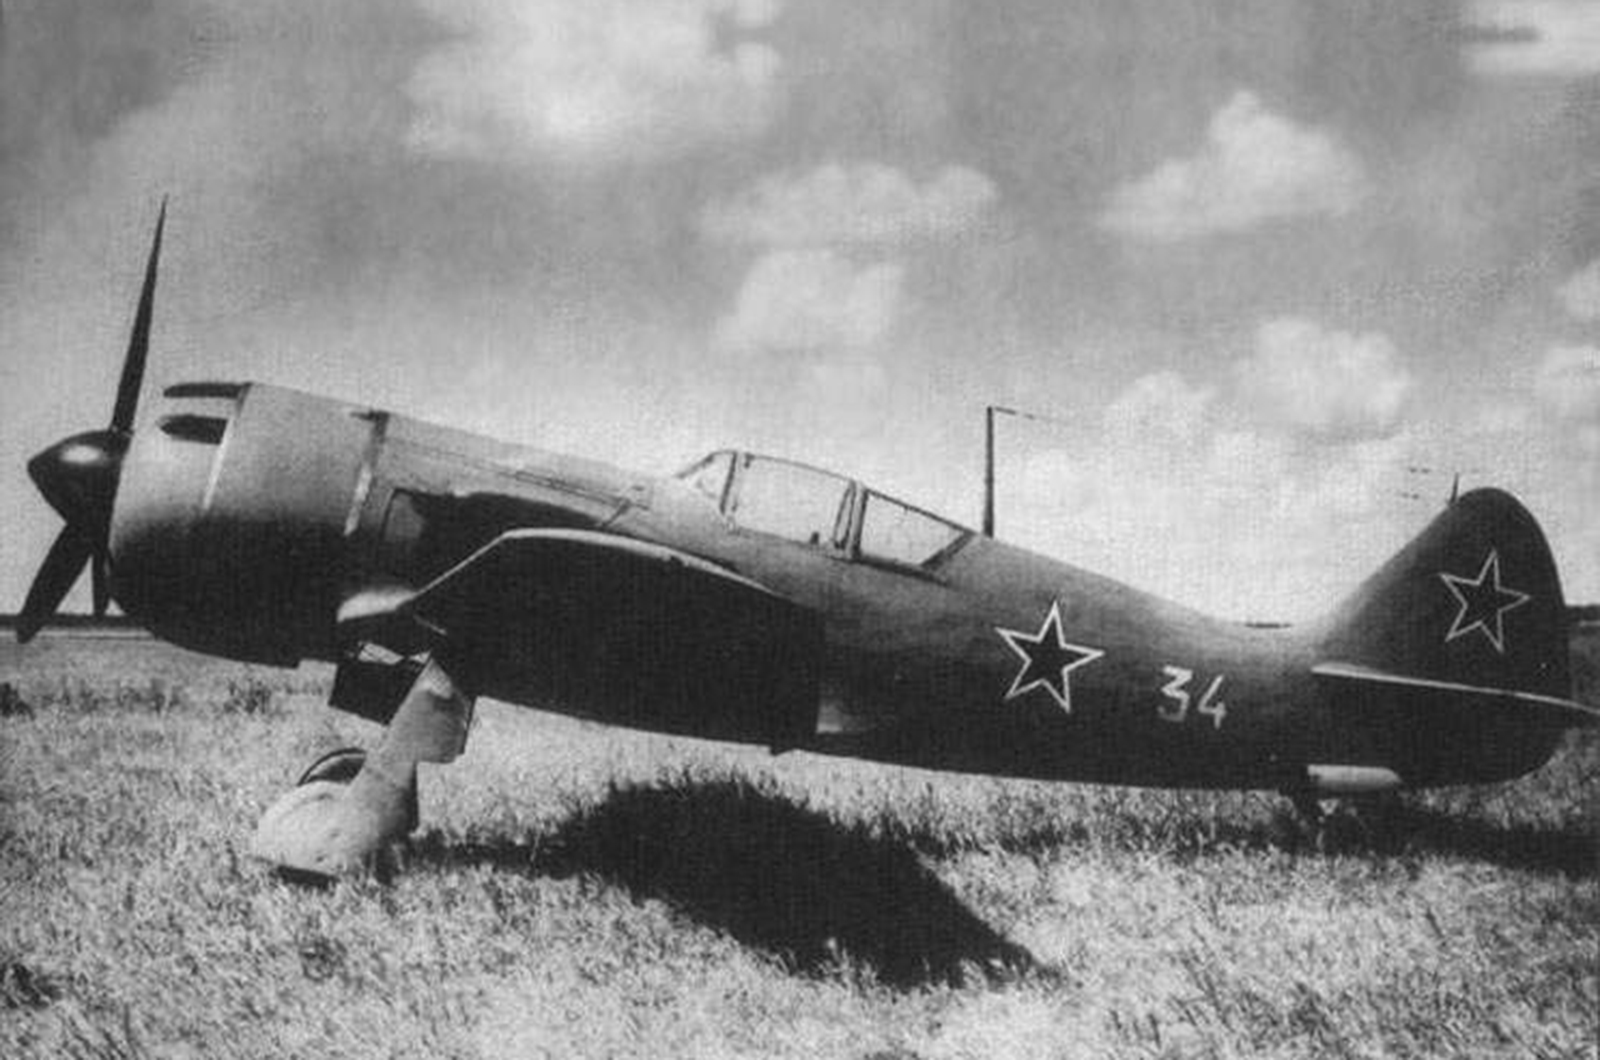 <p>Avec une vitesse de pointe impressionnante de 674 km/h et un armement à trois canons, le La-11 a su tirer profit d'une conception de base robuste datant de 1940. Il se distingue de la série de chasseurs agiles Yak, fabriqués par le bureau rival Yakovlev, qui s'est achevée avec le Yak-3 pendant la guerre.</p><p>Le succès du <strong>Lavochkin </strong>La-11 est dû au fait qu'il n'est arrivé qu'en 1947 et qu'il s'agissait d'un chasseur à moteur à pistons à l'ère des avions à réaction.</p>